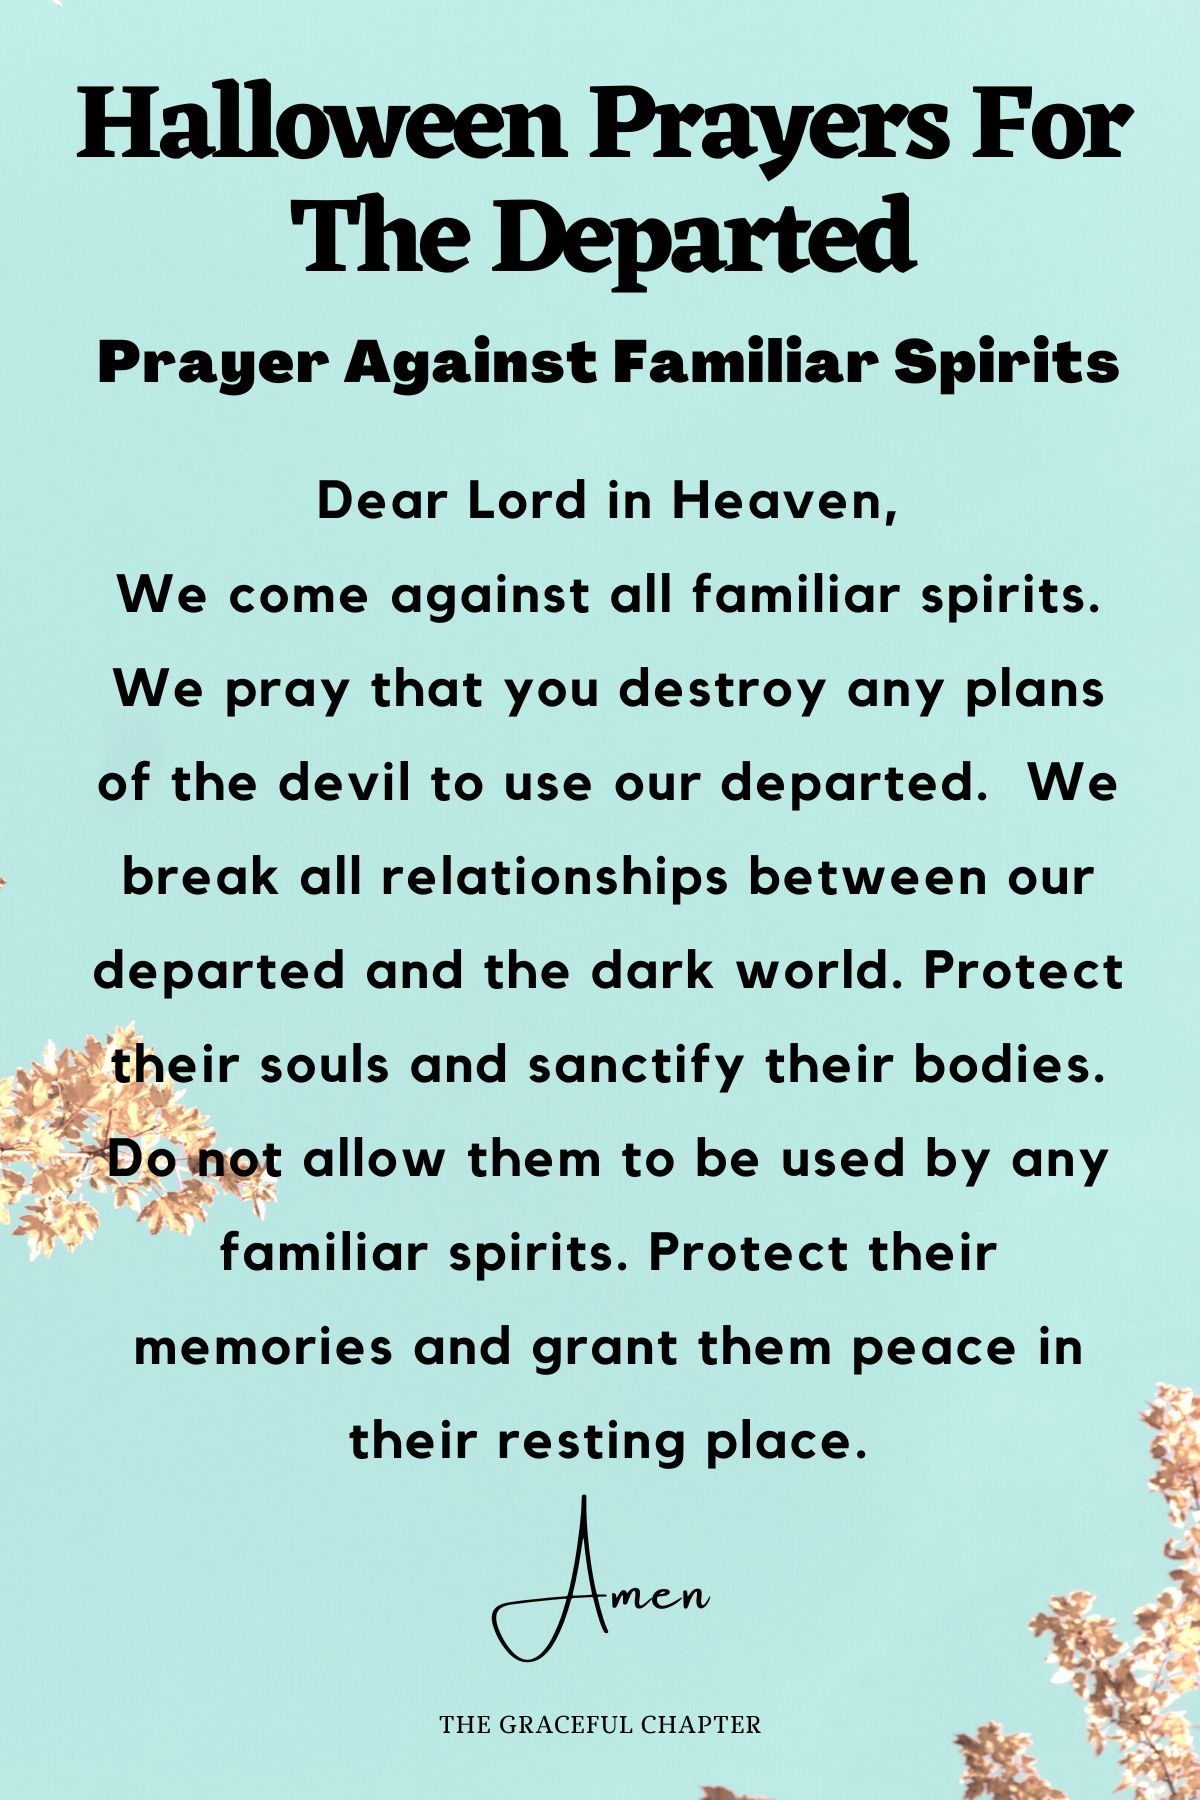 Prayer against familiar spirits